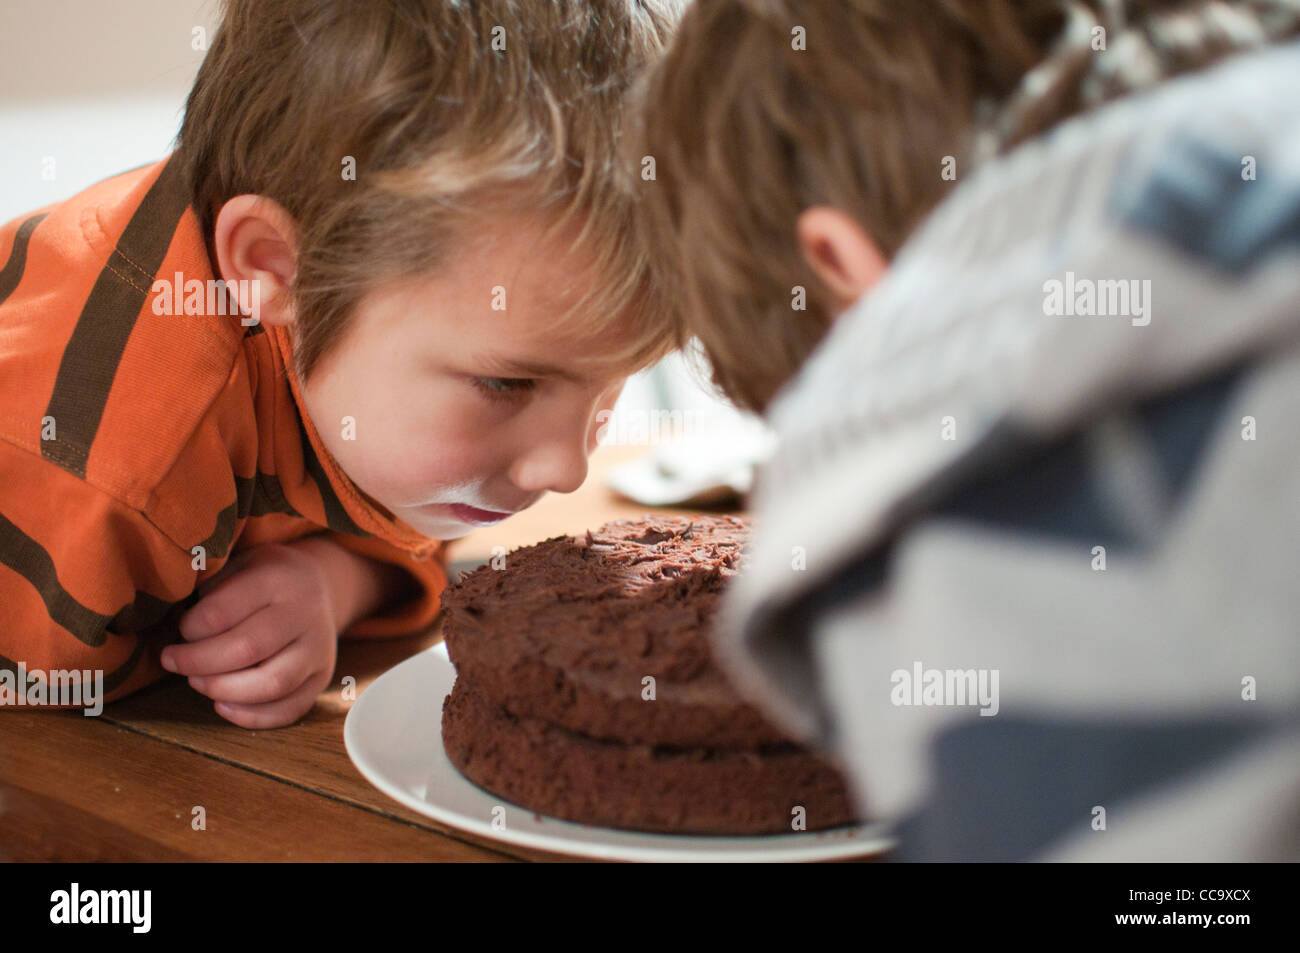 Les jeunes professionnels garçon assis à la table en train de manger un morceau de gâteau au chocolat Banque D'Images